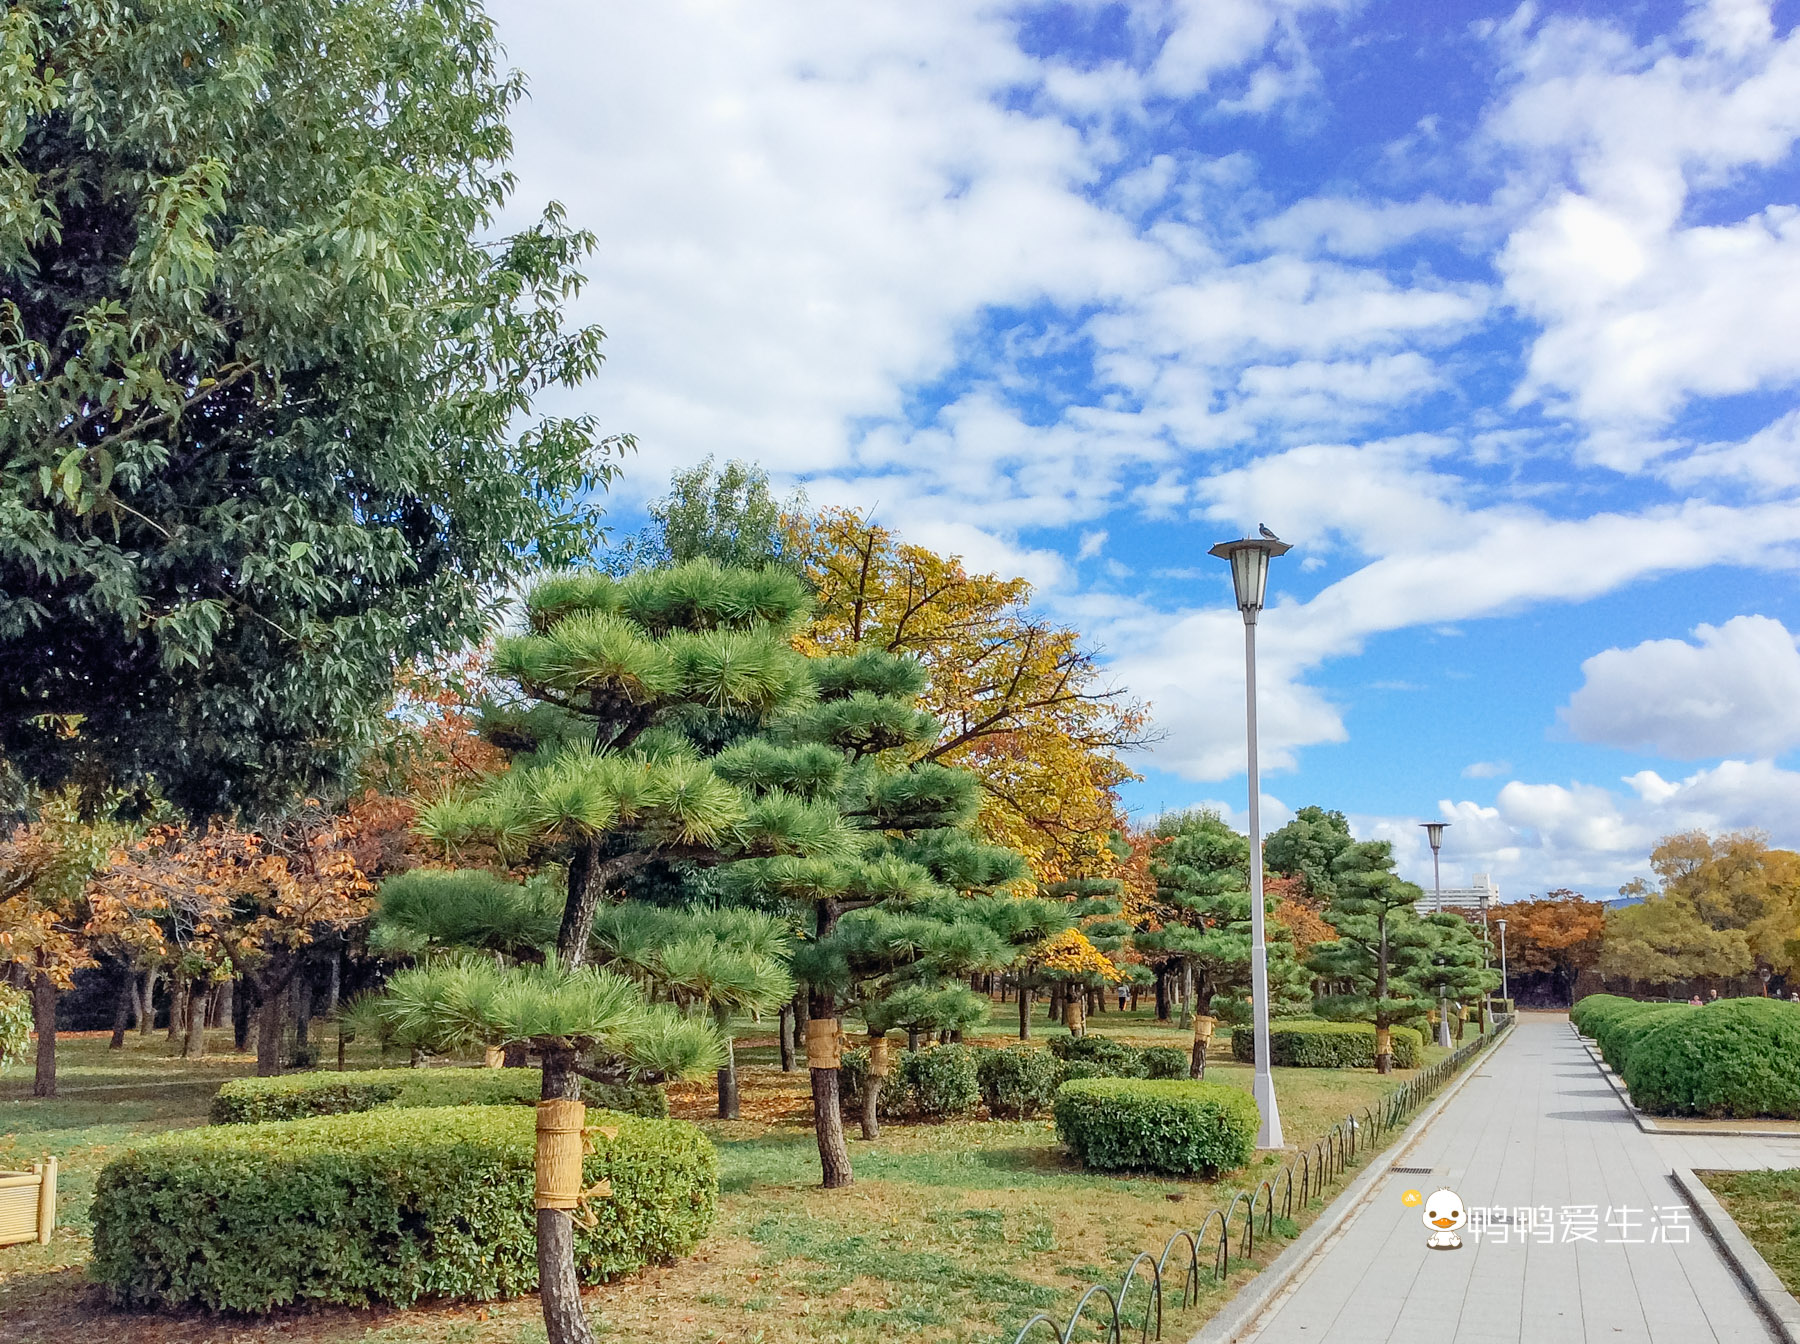 日本大阪最大的公园 被5个地铁站包围 花开时节美不胜收 阿波罗新闻网